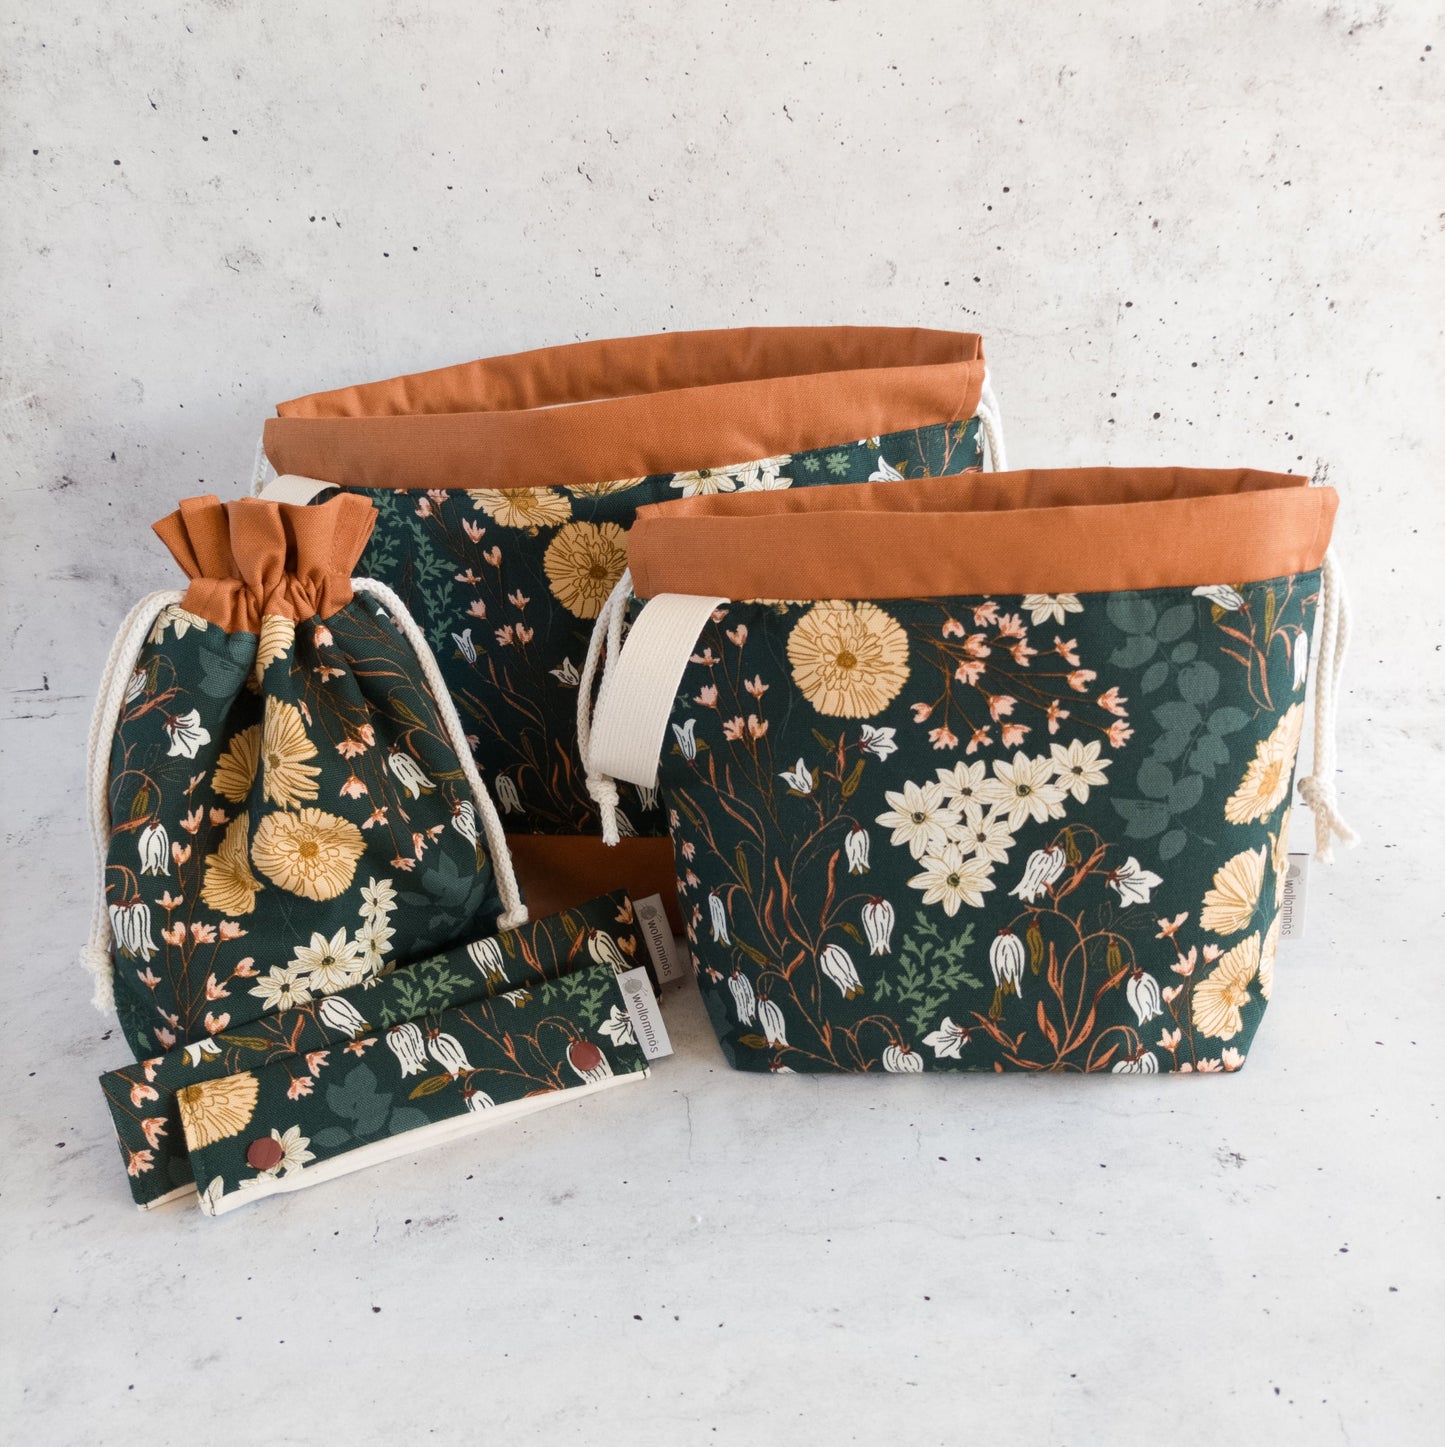 Projektbeutel | Stricktasche für unterwegs | Motiv grüne Blumenwiese (braun)